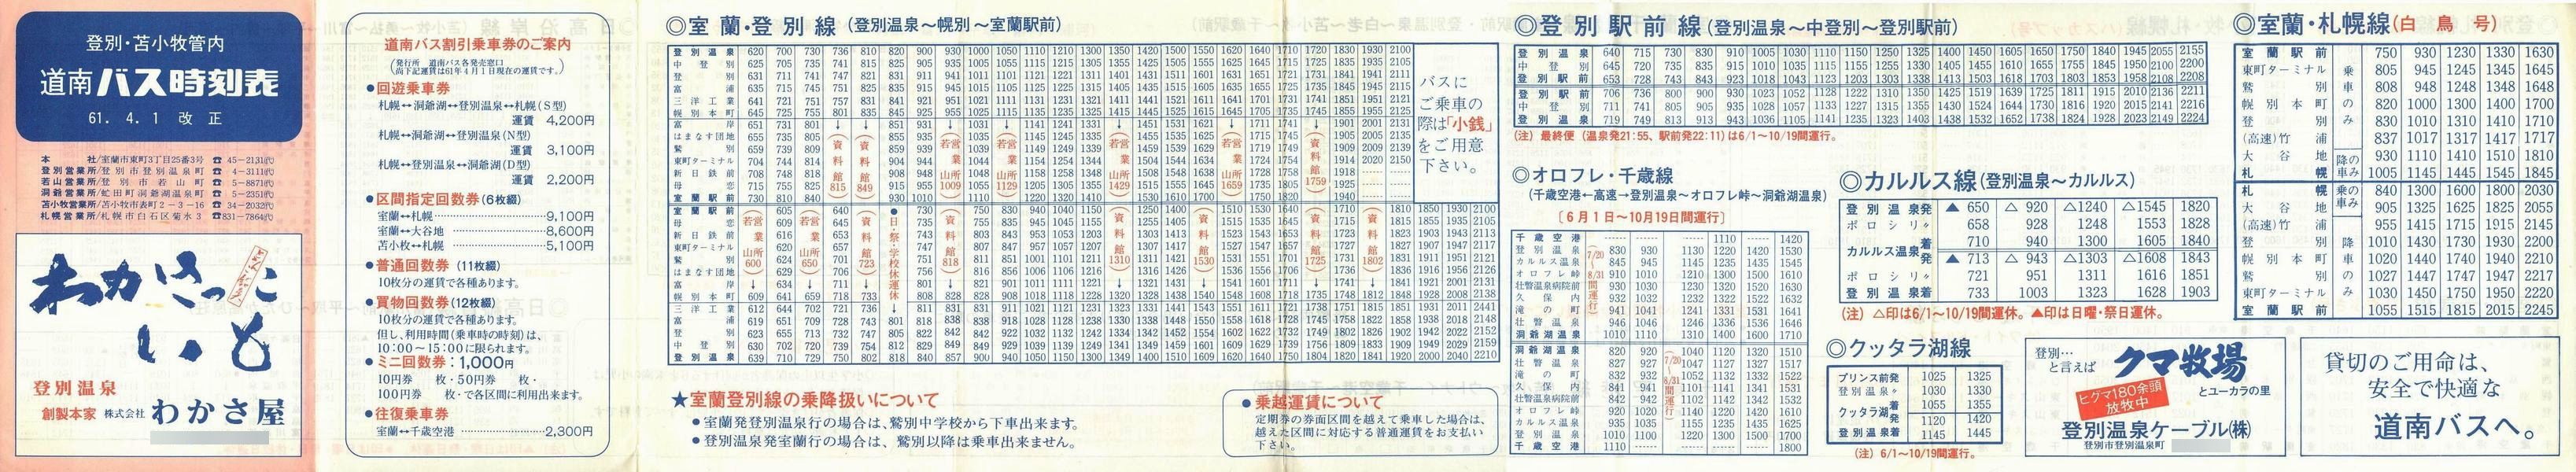 1986-04-01改正_道南バス_登別・苫小牧管内時刻表表面